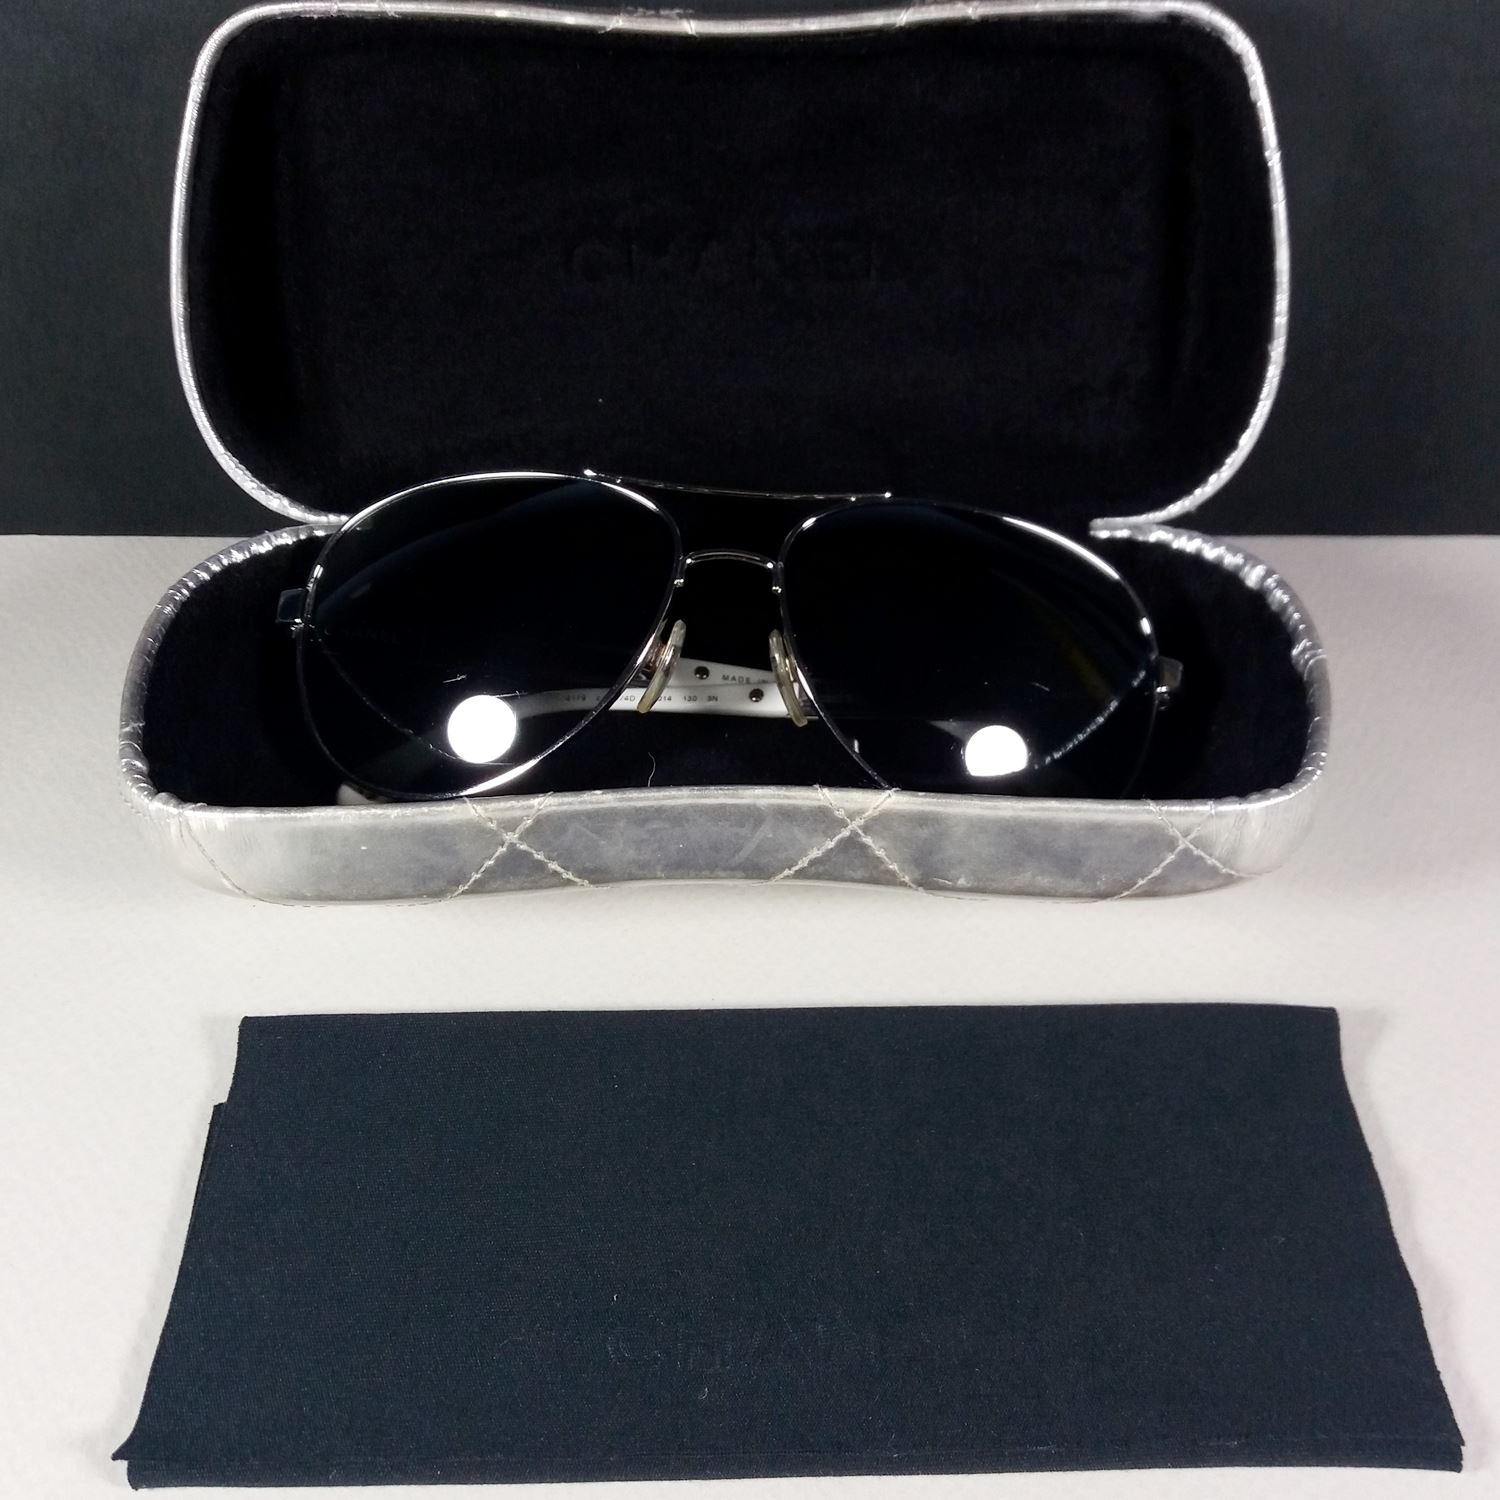 Chanel Collection Miroir 4179 CC Logo c.124/4D 130 Pilot Sunglasses Case &  Cloth –